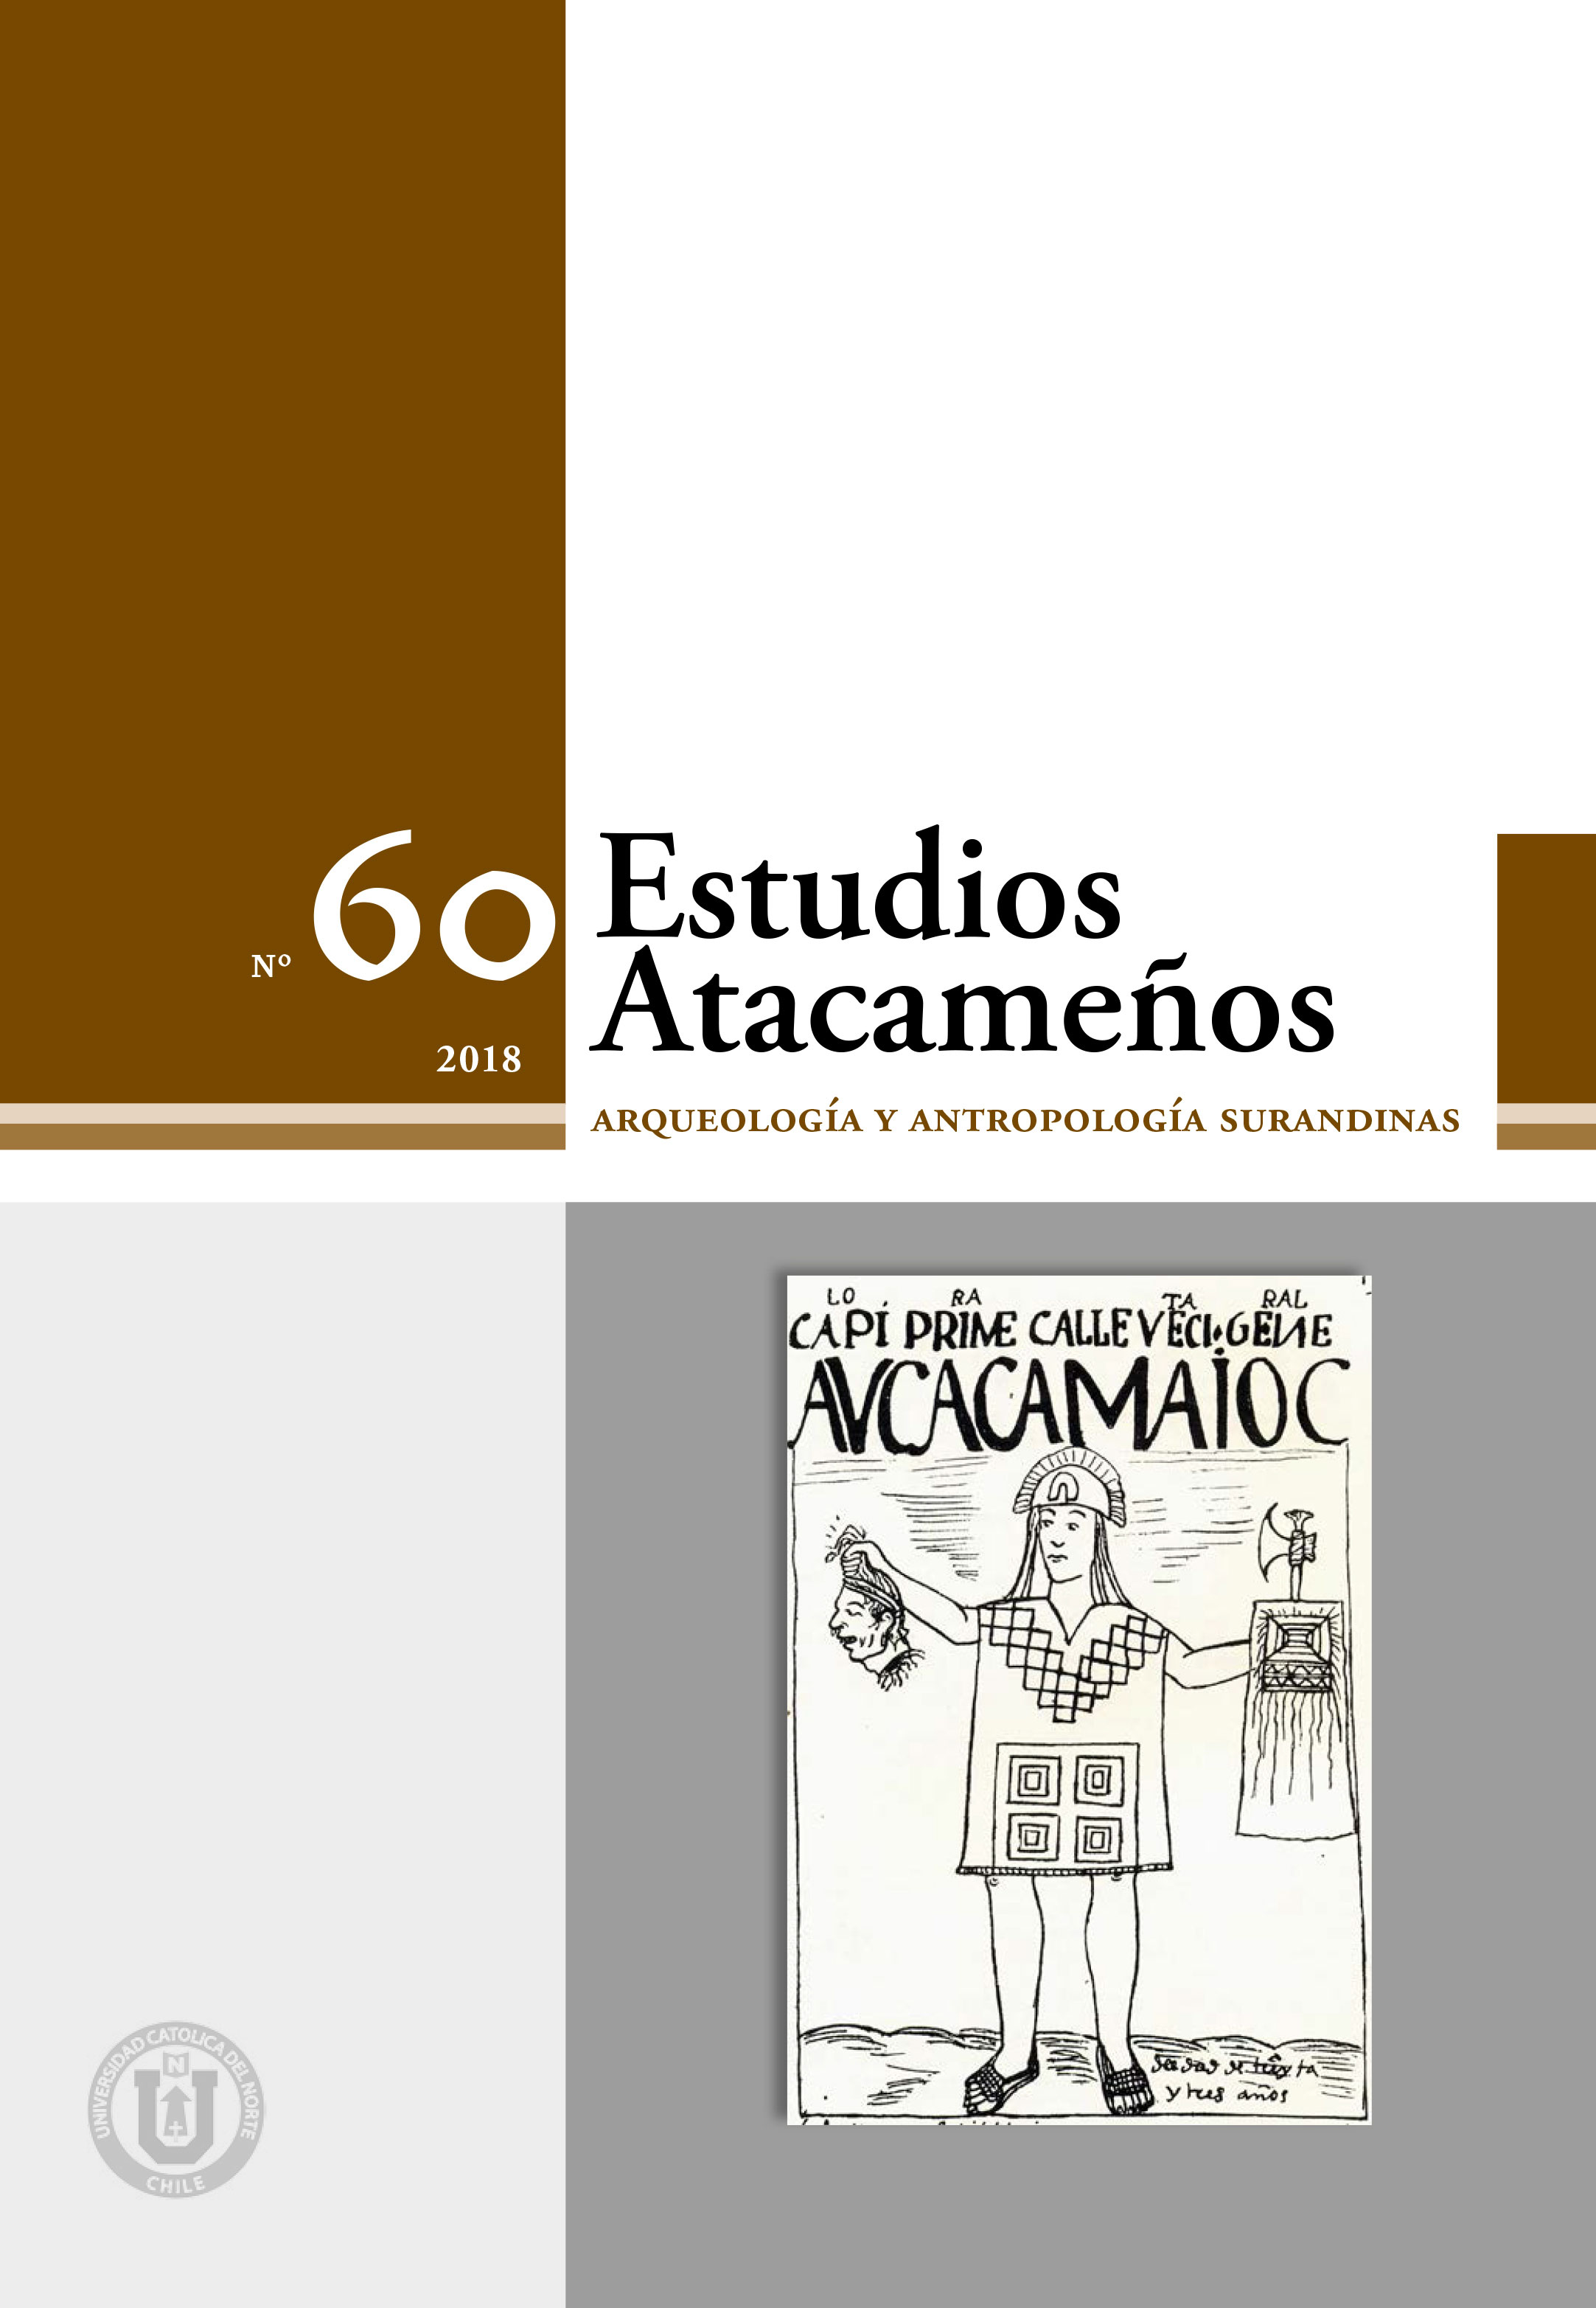 Memorias dolorosas, memorias del dolor: reflexiones y debates mapuche sobre  la restitución de restos humanos mapuche-tehuelche en la Patagonia  argentina | Estudios Atacameños (En línea)